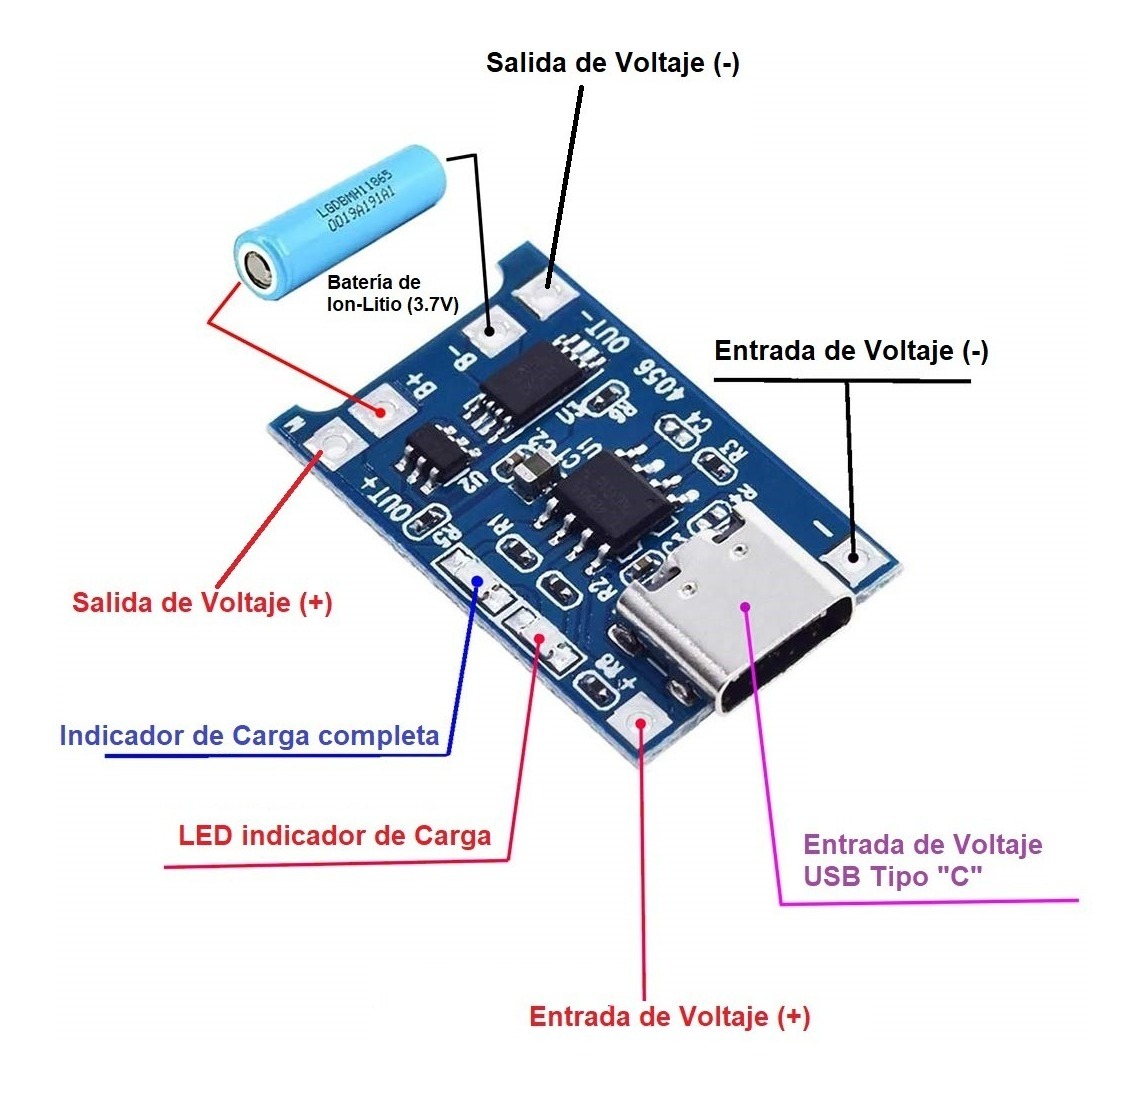 Módulo Cargador Batería de Litio / LiPo 1A USB C 5V – TP4056 - Electronilab